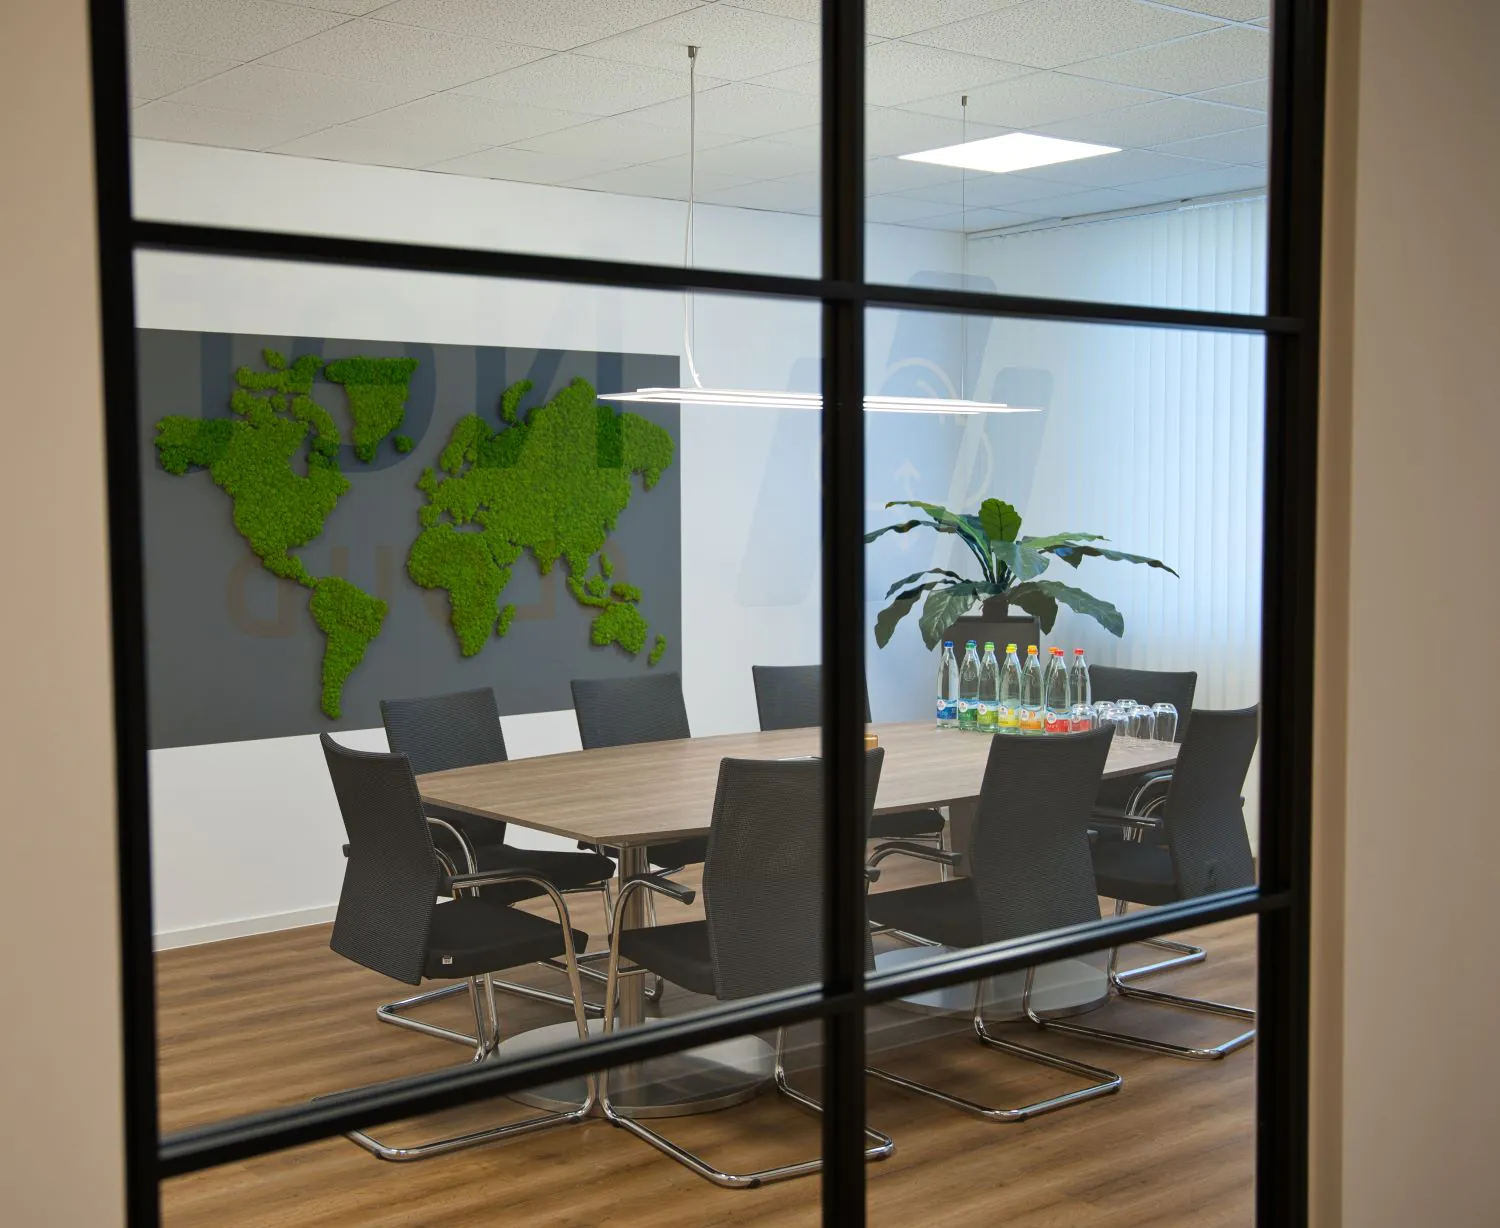 Blick vom Gang durch Glaswand in Konferenzraum mit Weltkarte als Graswand